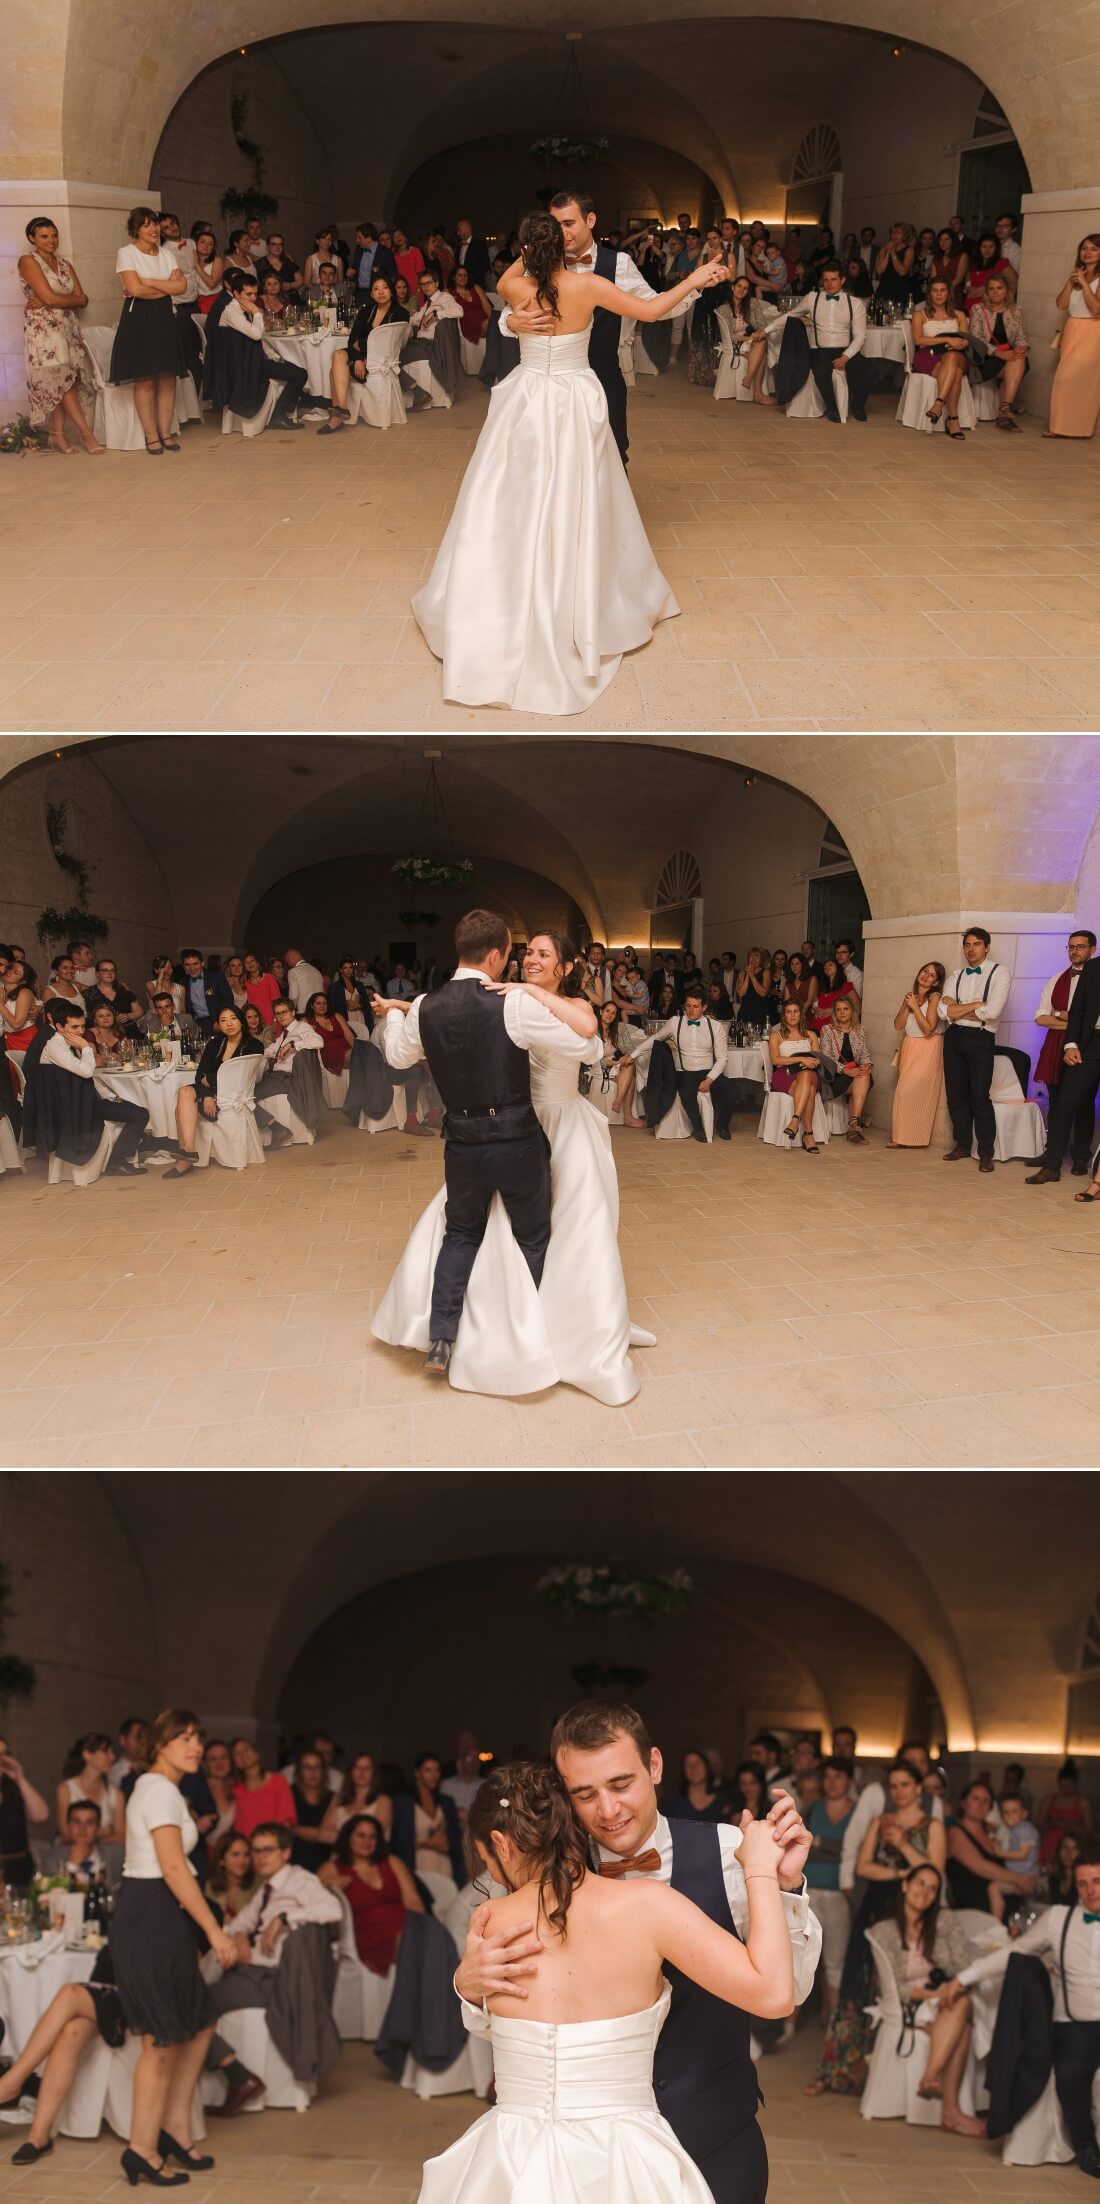 Mariage au Chateau de la Bourdaisiere - Photographe mariage Tours